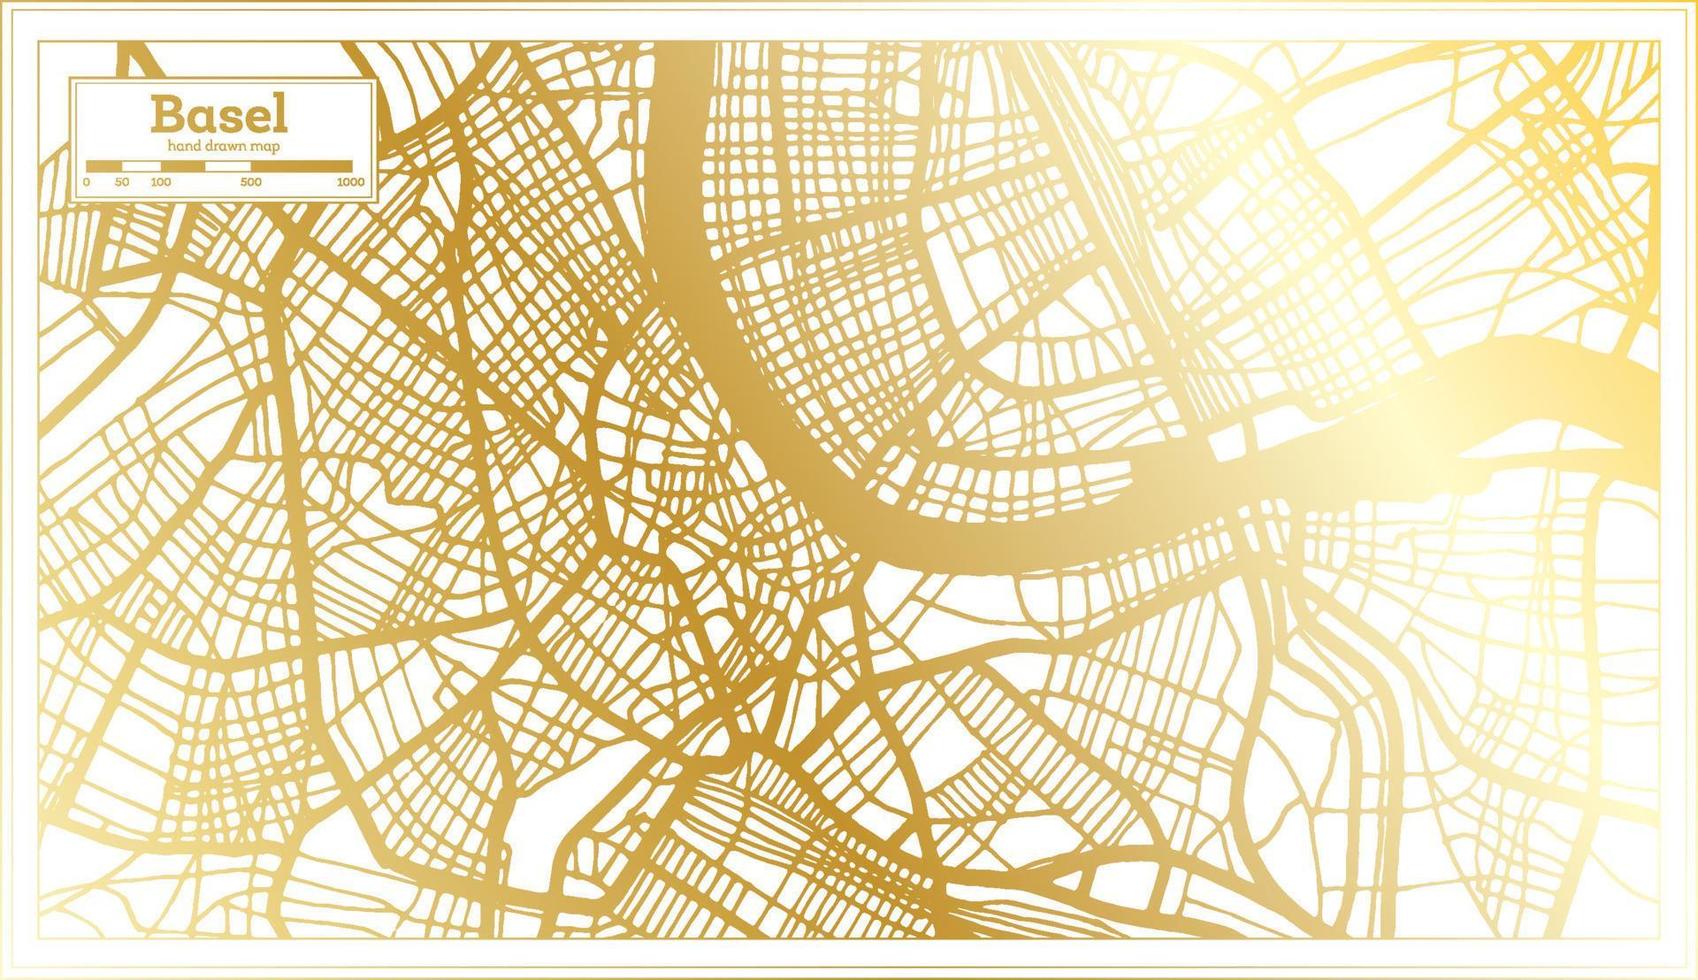 Bazel Zwitserland stad kaart in retro stijl in gouden kleur. schets kaart. vector